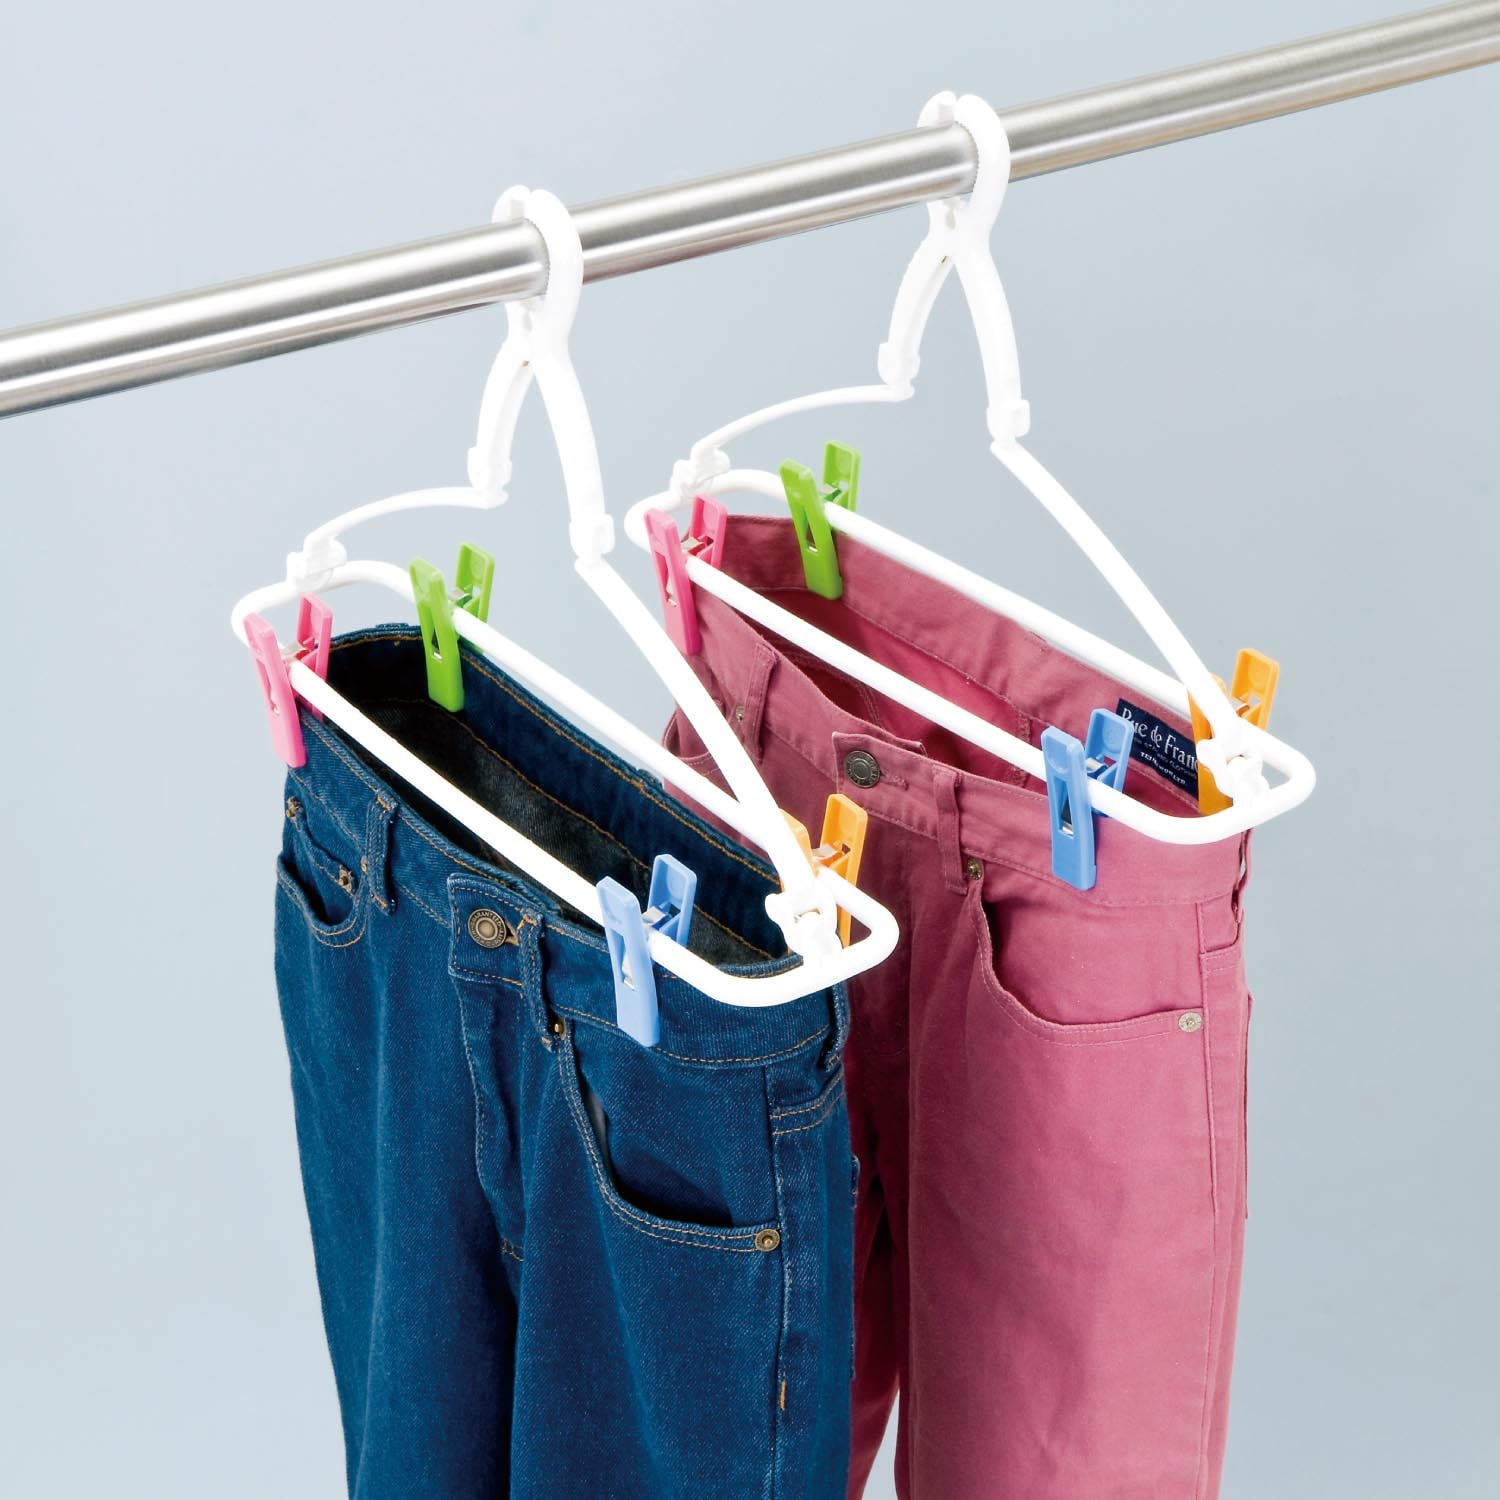 ズボンが早く乾く洗濯ハンガー2本セット 【厚手のスエットシャツも】